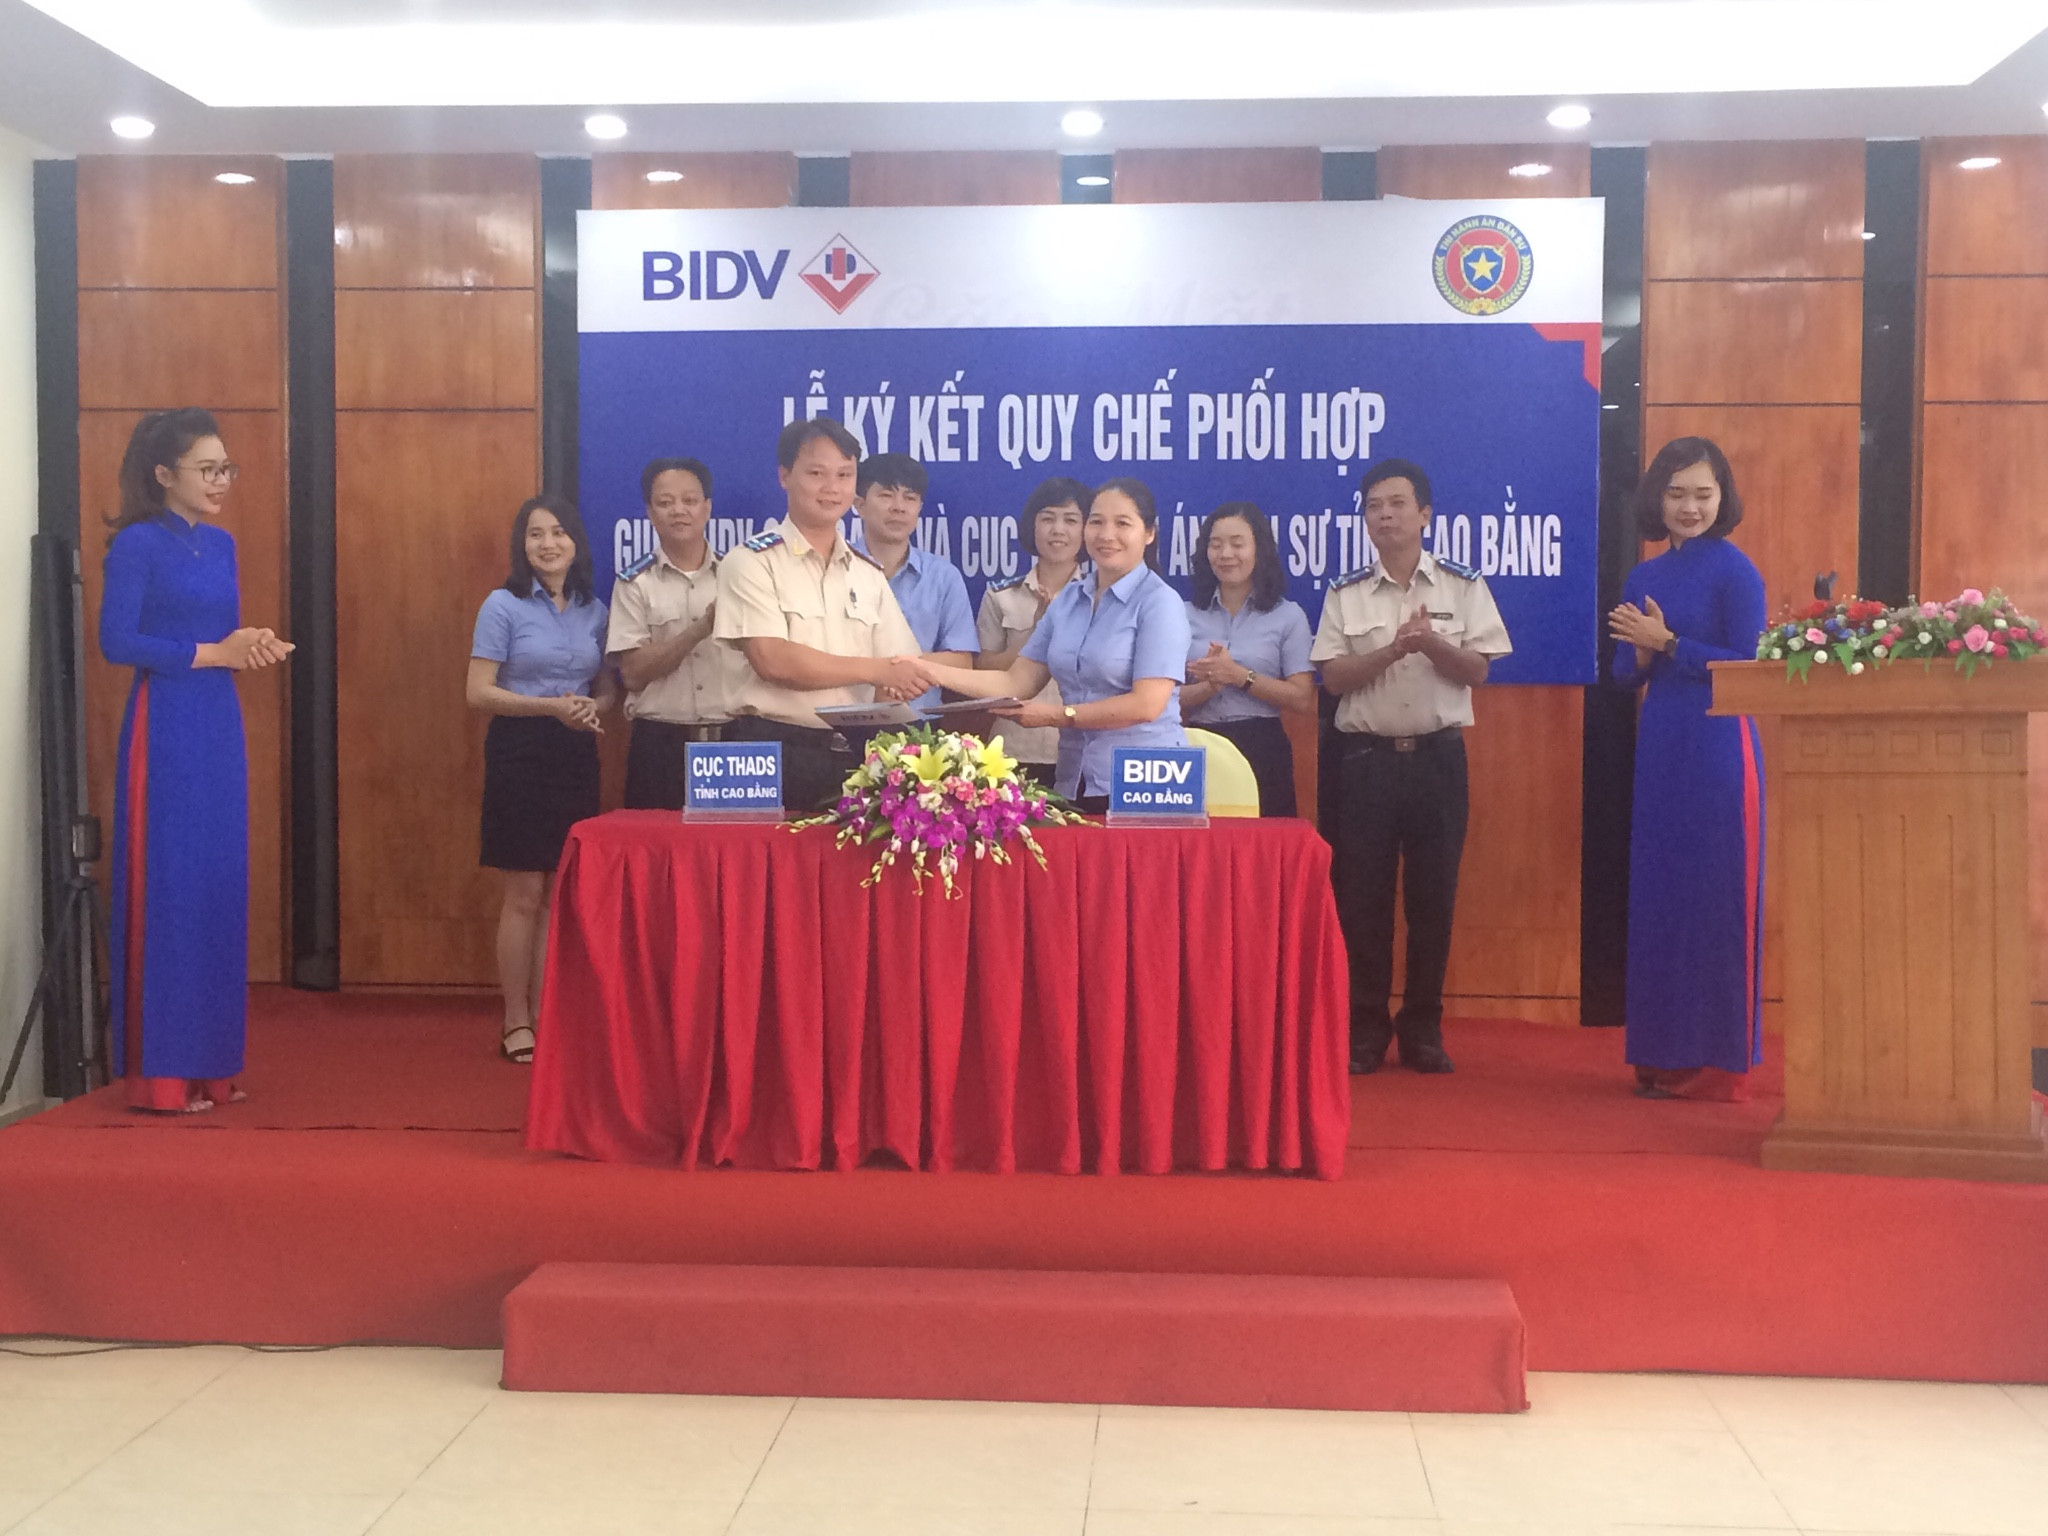 Cục Thi hành án dân sự tỉnh Cao Bằng  và Ngân hàng TMCP Đầu tư và Phát triển Việt Nam - Chi nhánh Cao Bằng  đã tổ chức Lễ ký kết Quy chế phối hợp trong công tác thi hành án dân sự